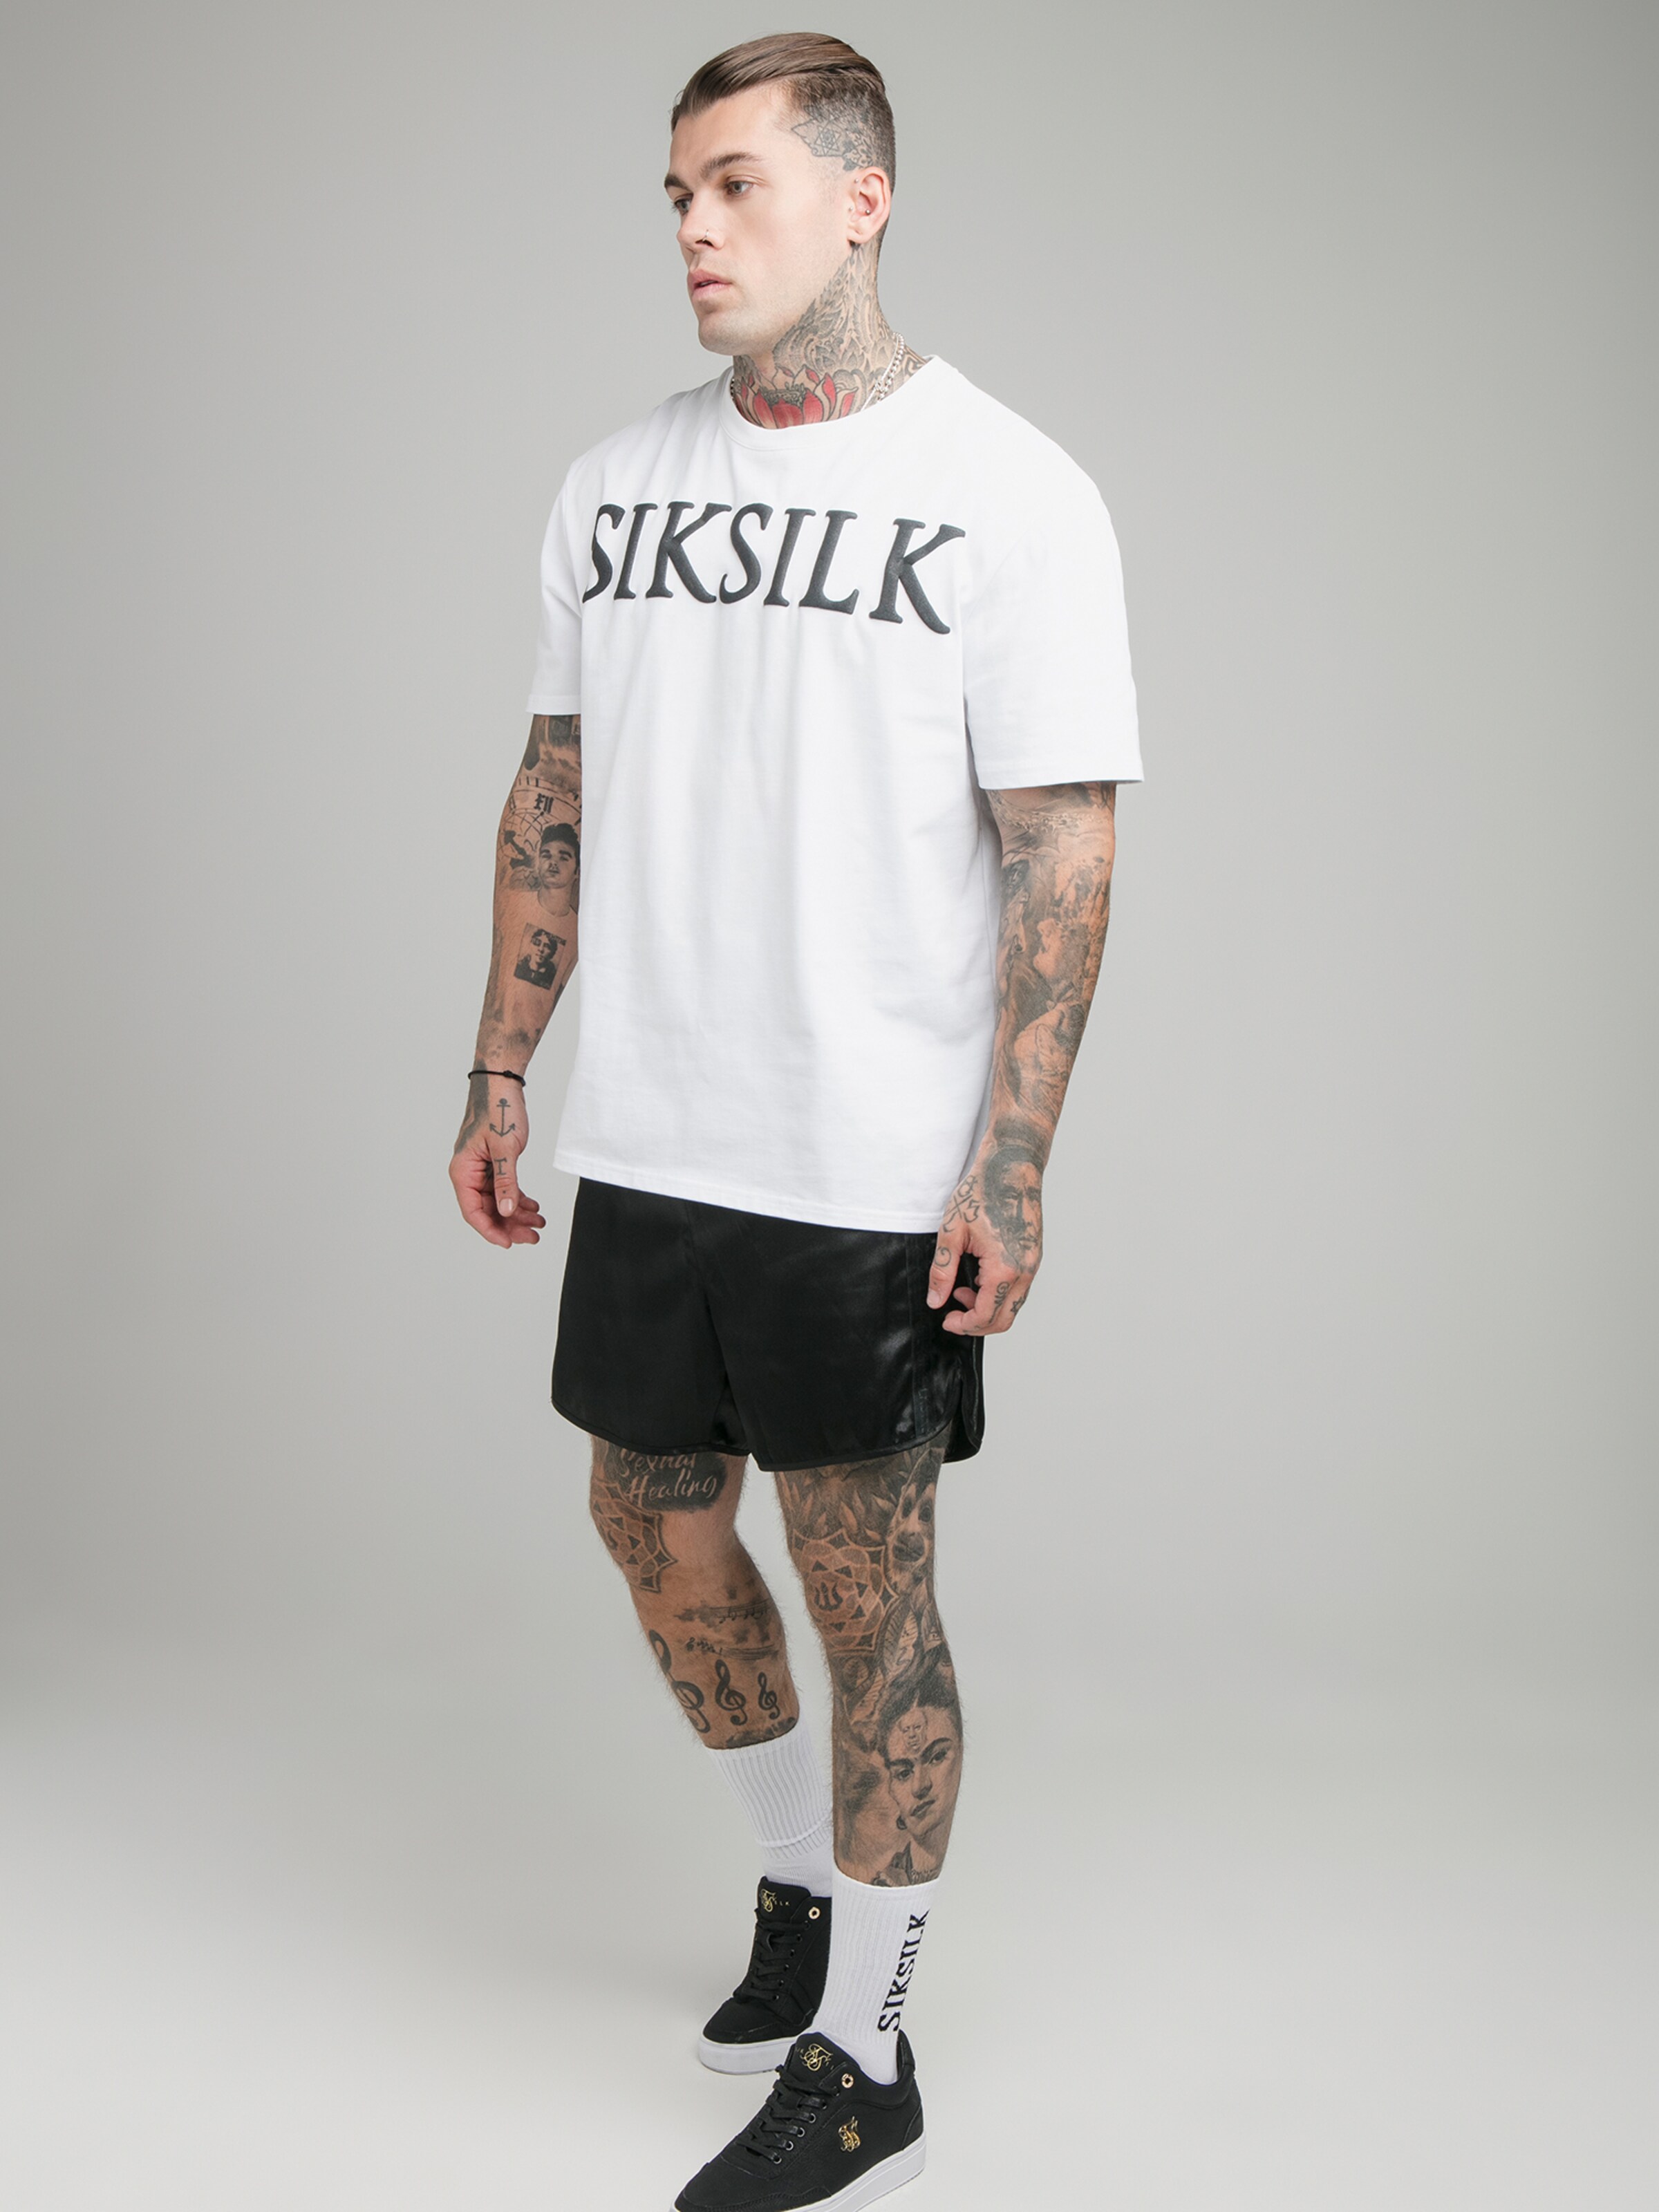 Männer Shirts SikSilk Shirt in Weiß - MU97991